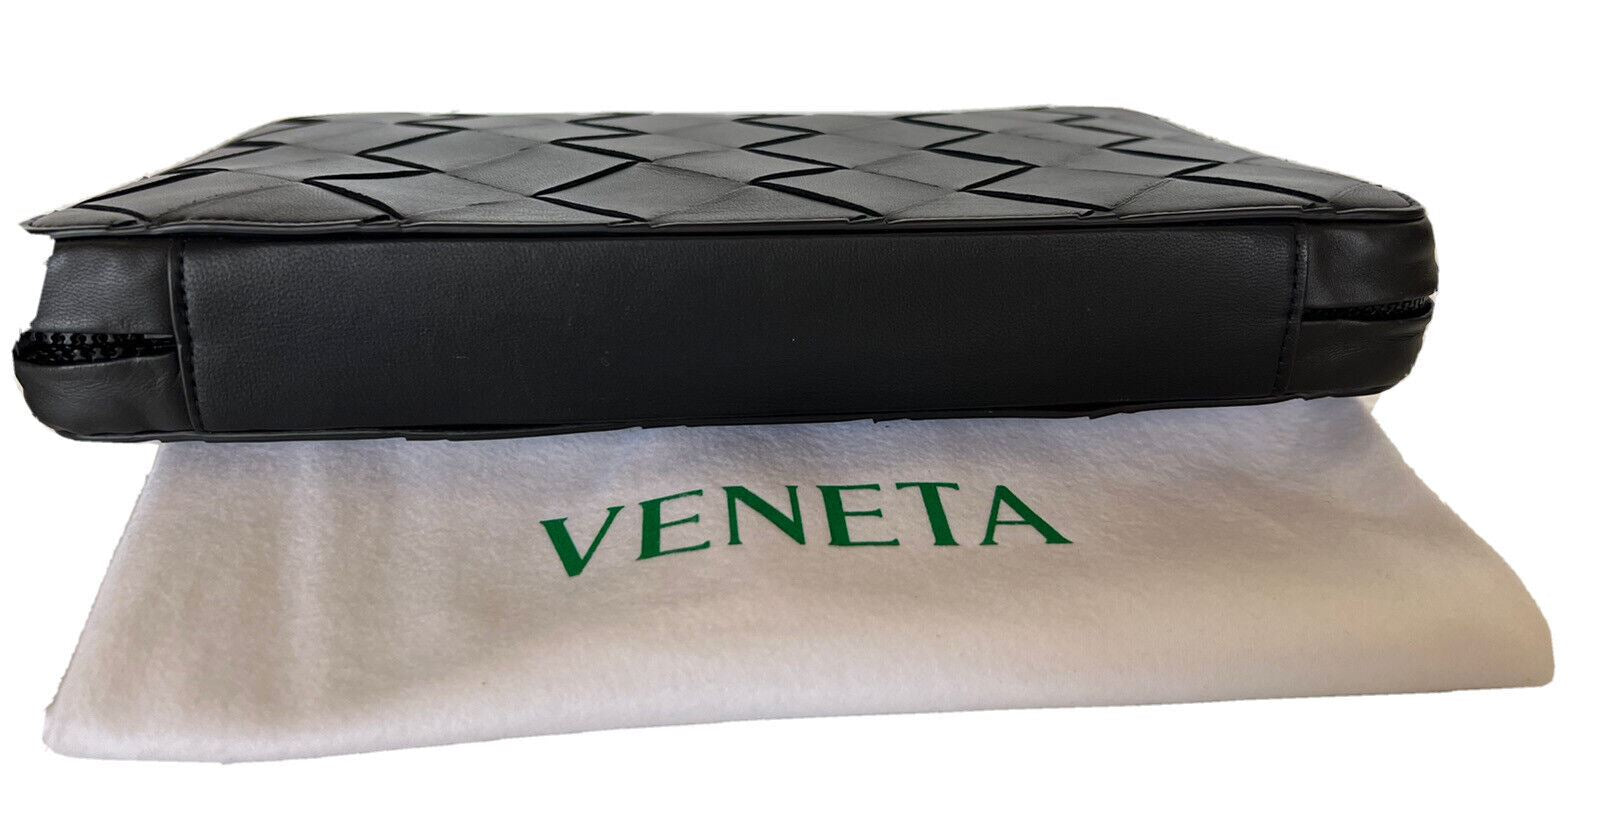 NWT $1200 Bottega Veneta Intrecciato Black Leather Organizer Case 629700 Italy